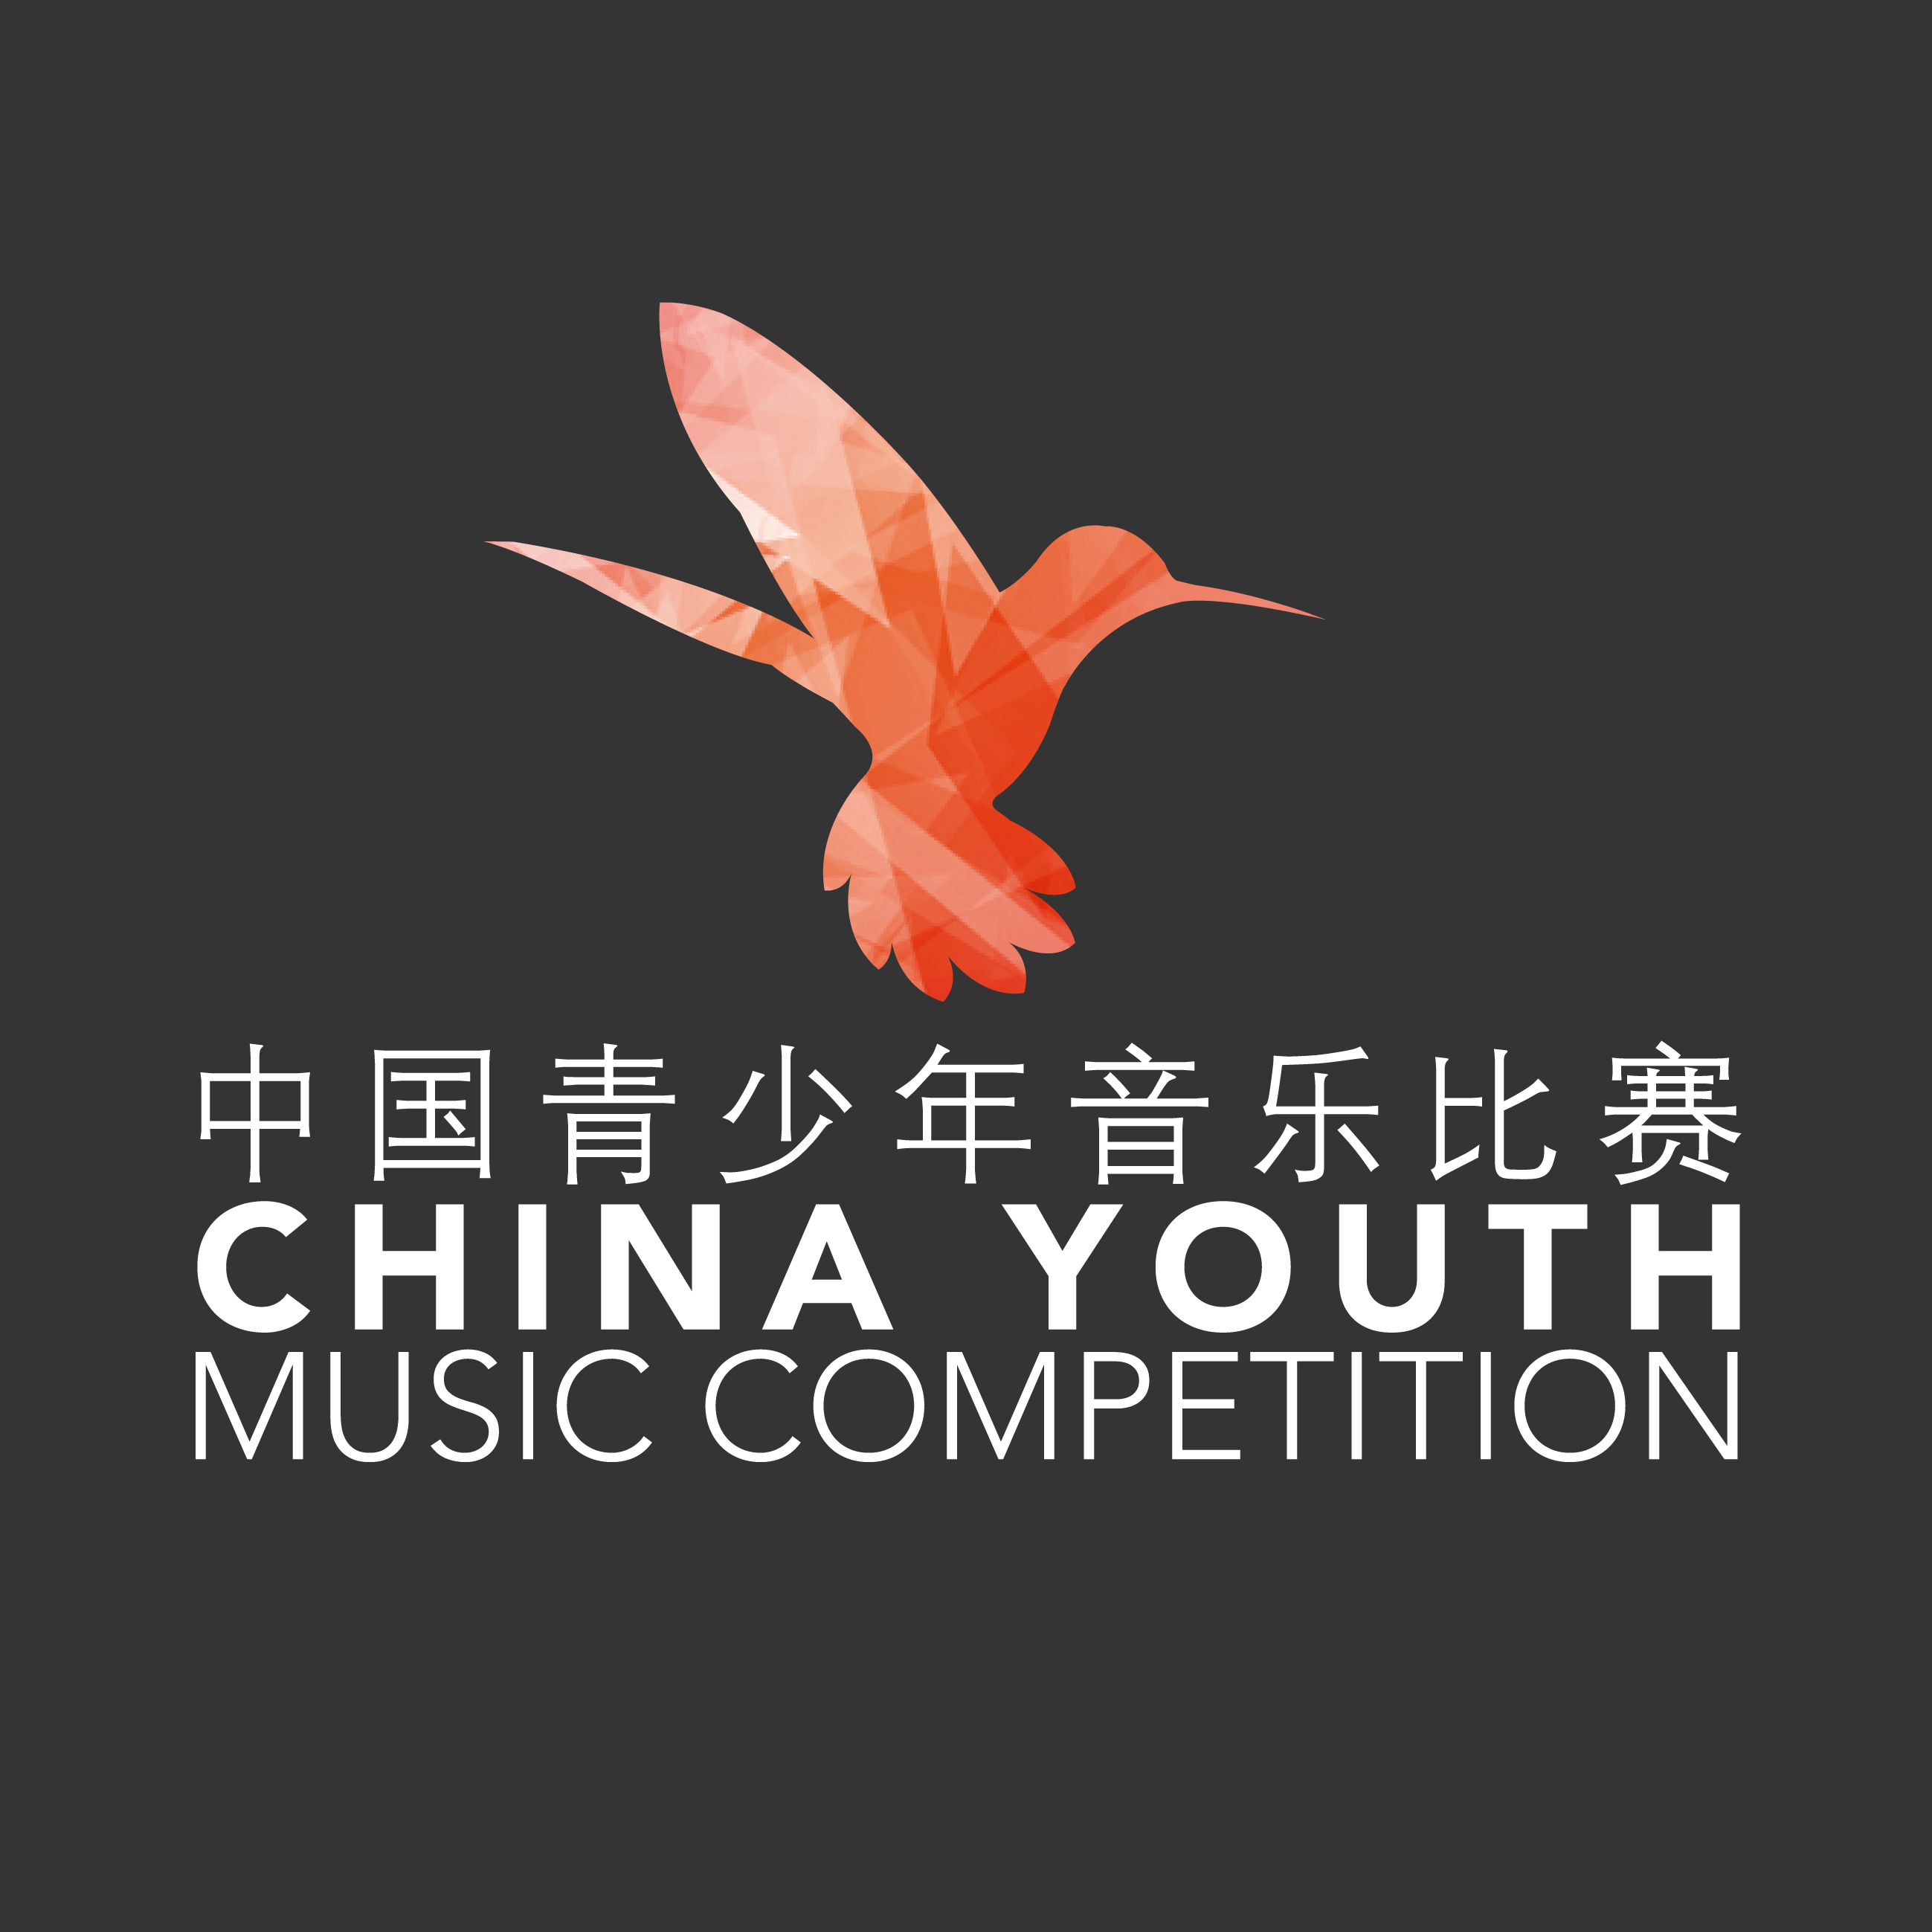 中國青少年音樂比賽